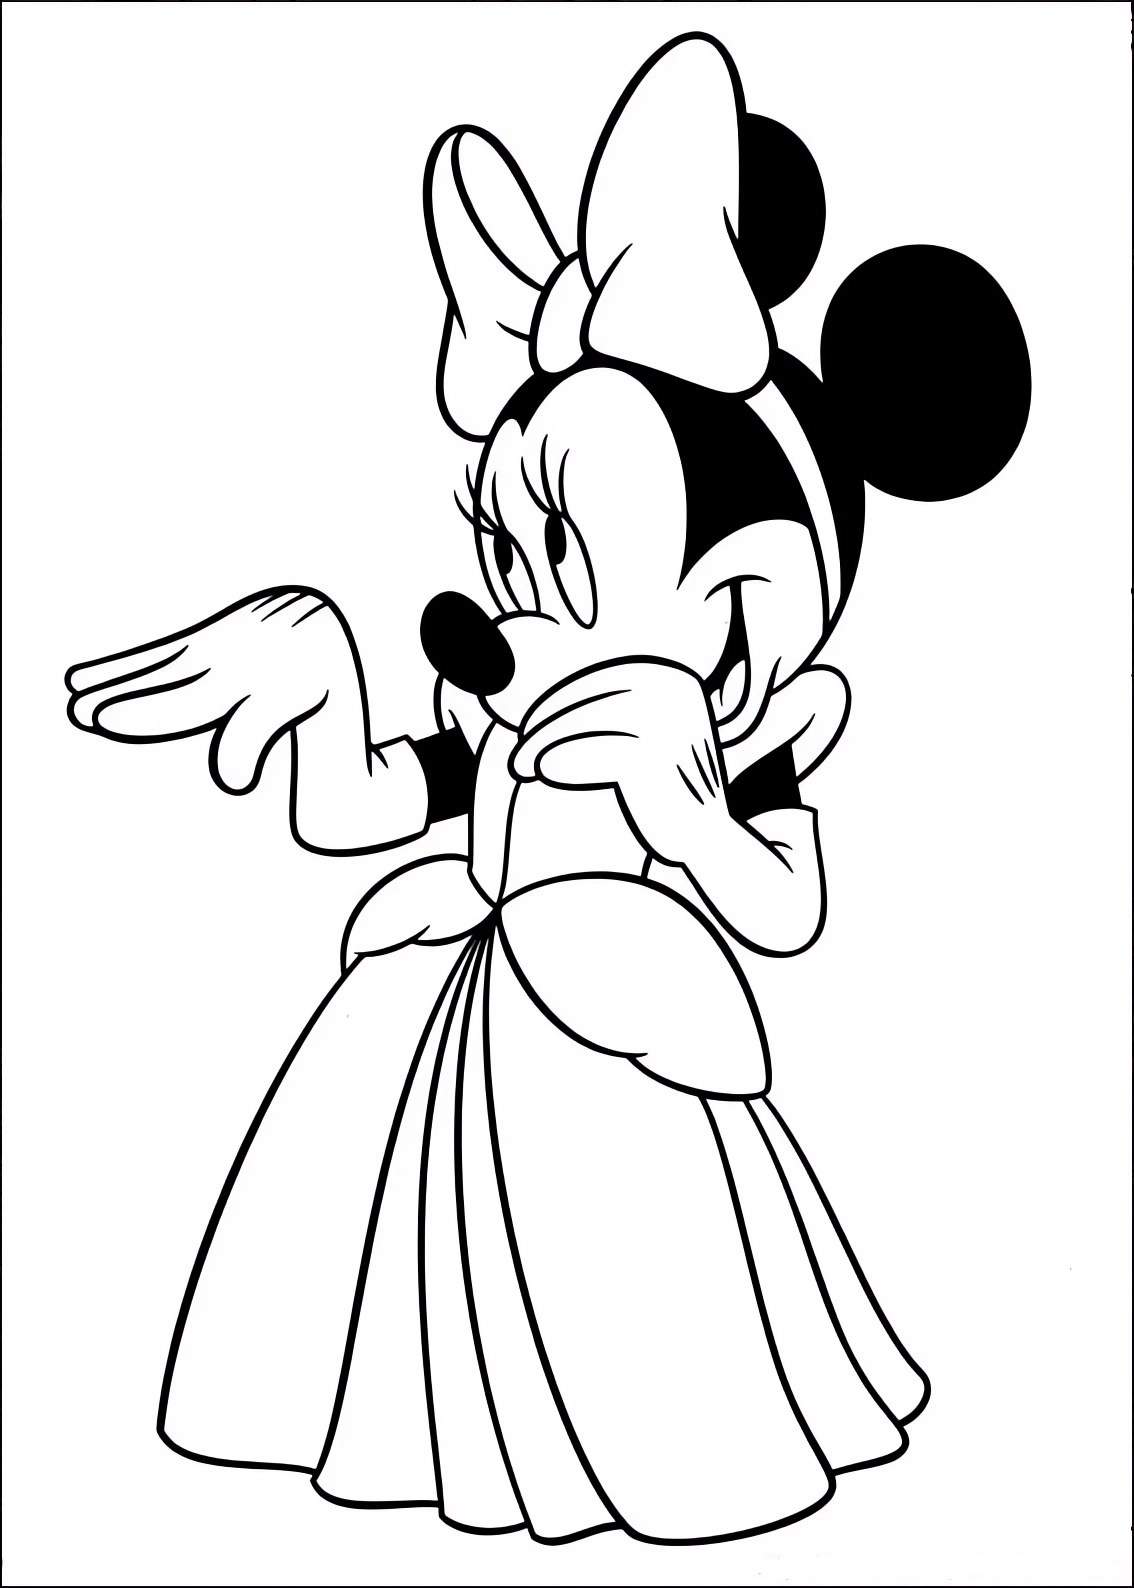 Disegno da colorare di Minnie vestita come la principessa Cenerentola